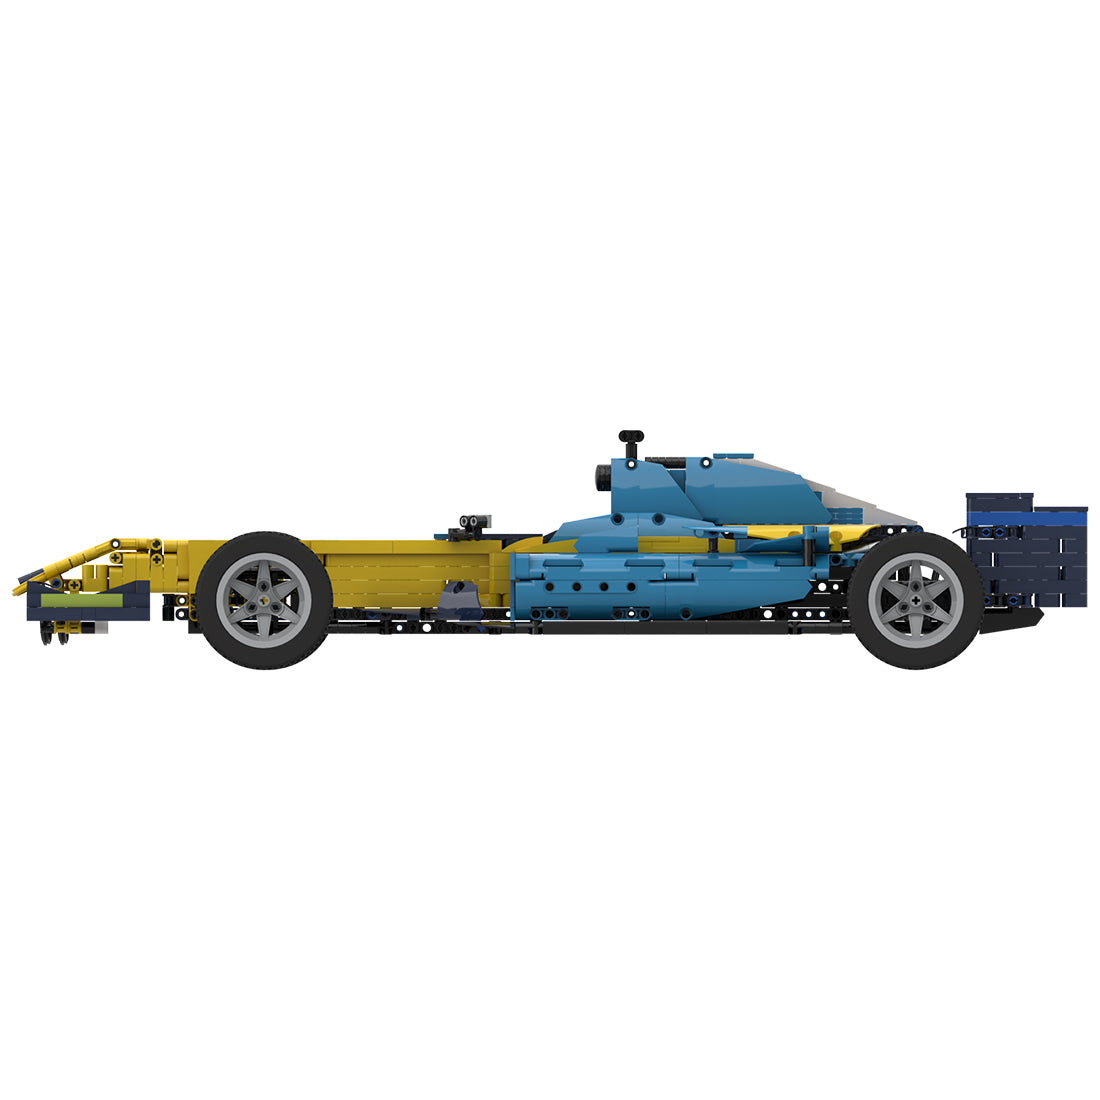 MOC-55175 RS26 Formel-Rennwagen im Maßstab 1:8